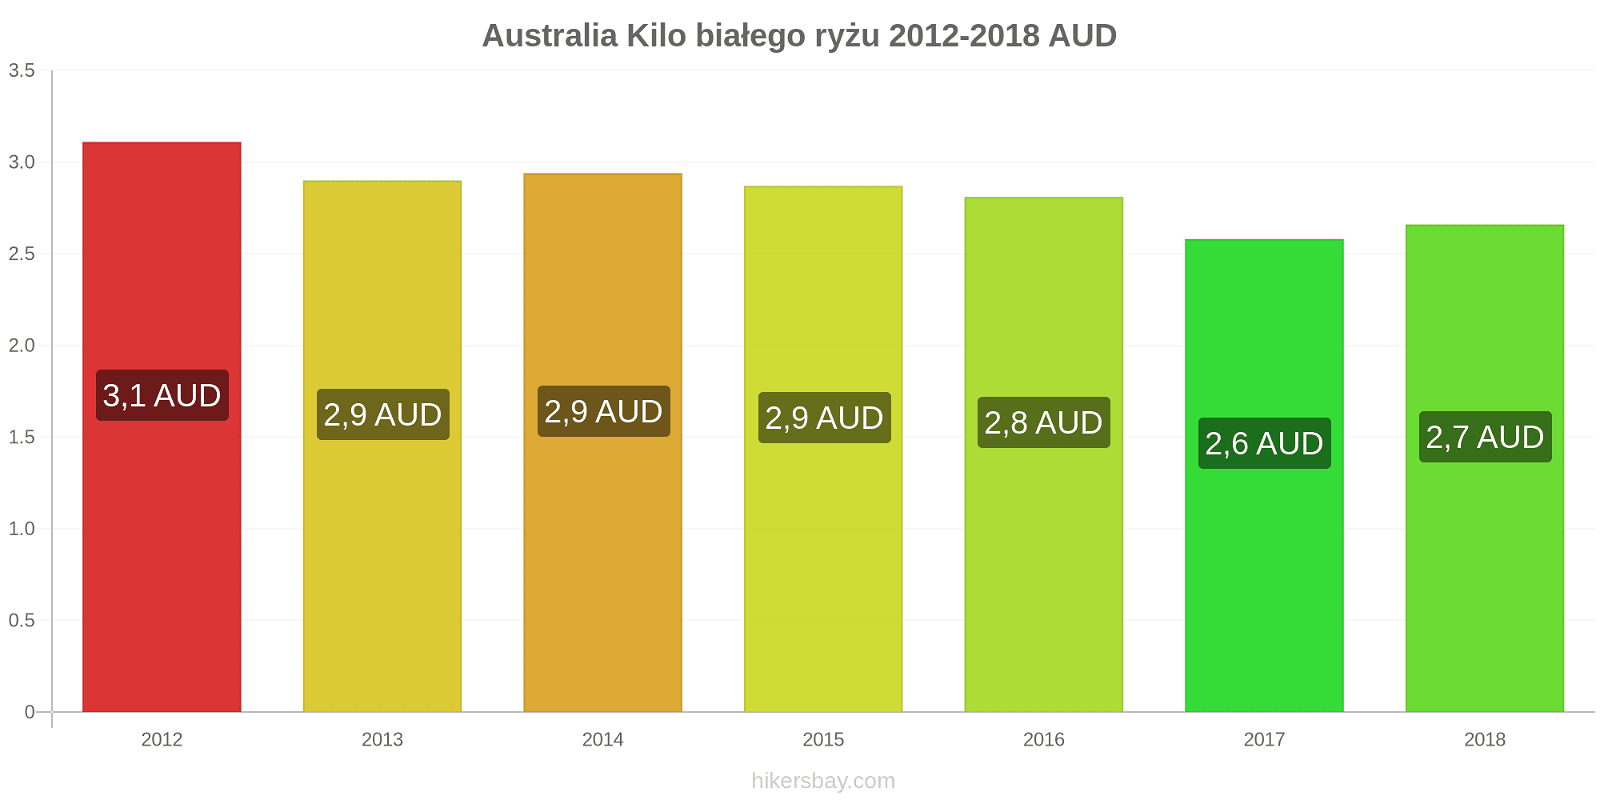 Australia zmiany cen Kilo białego ryżu hikersbay.com